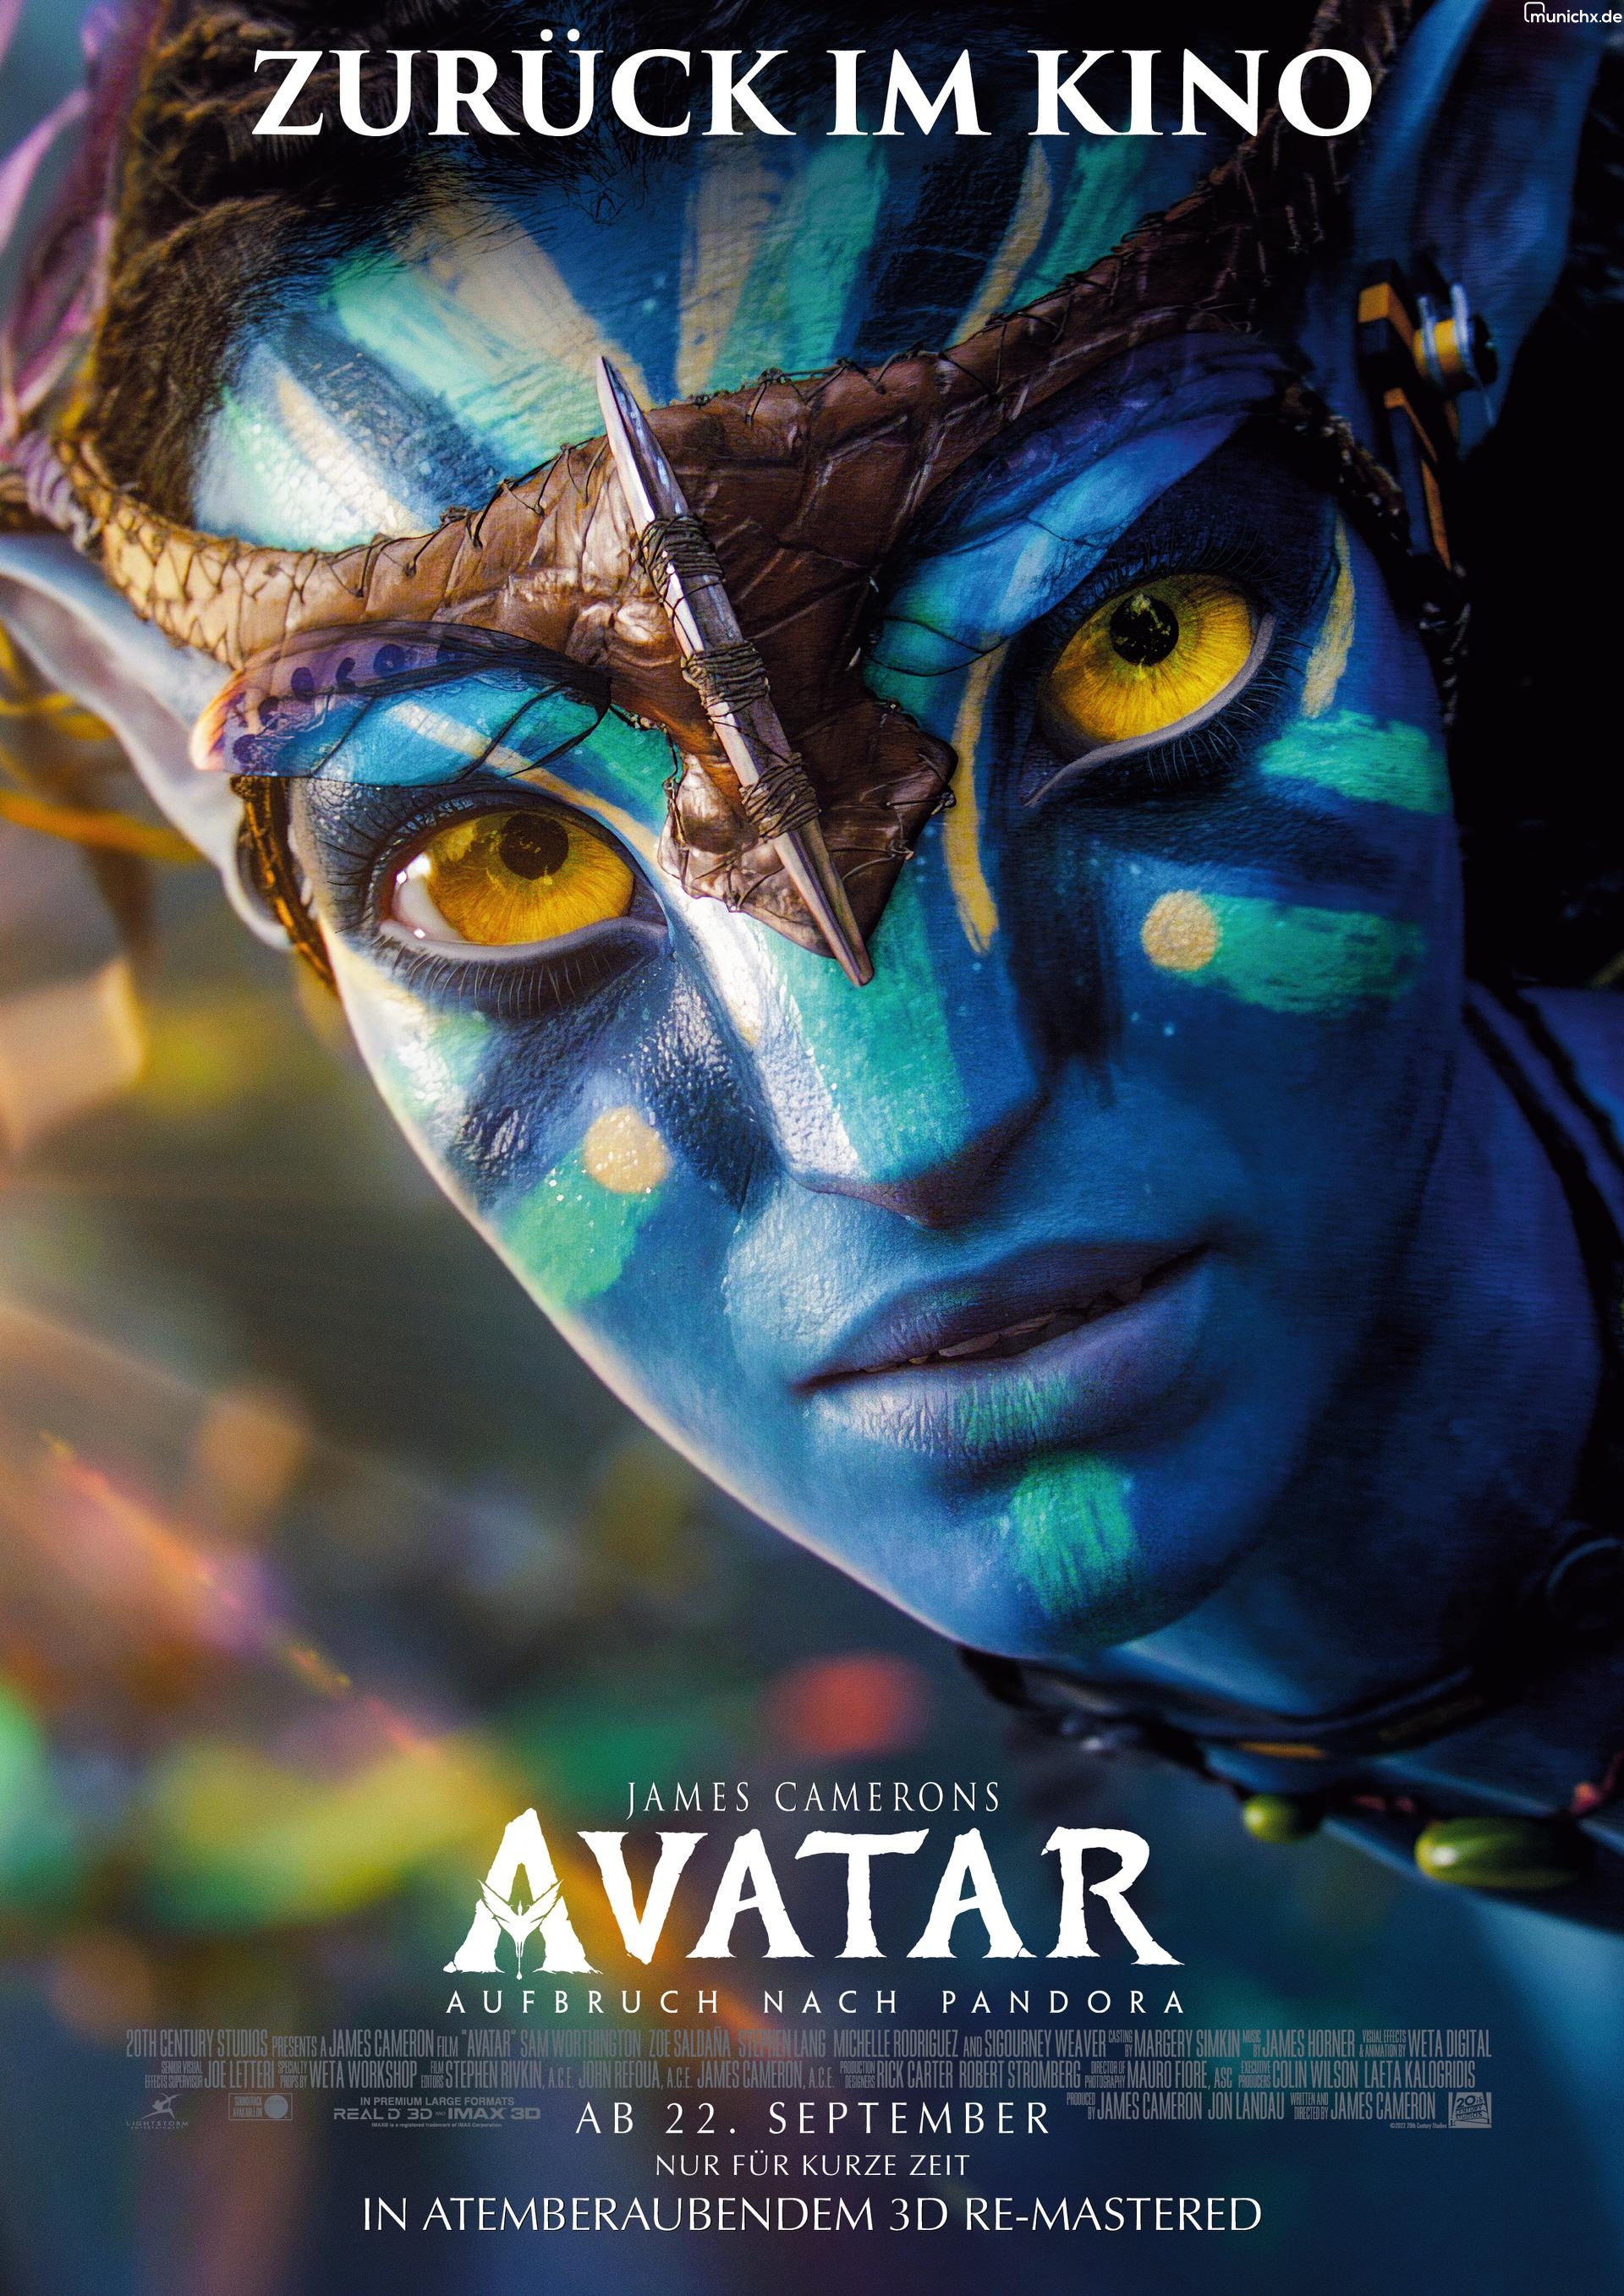 Avatar - Aufbruch nach Pandora 3D (OV) (Remastered)